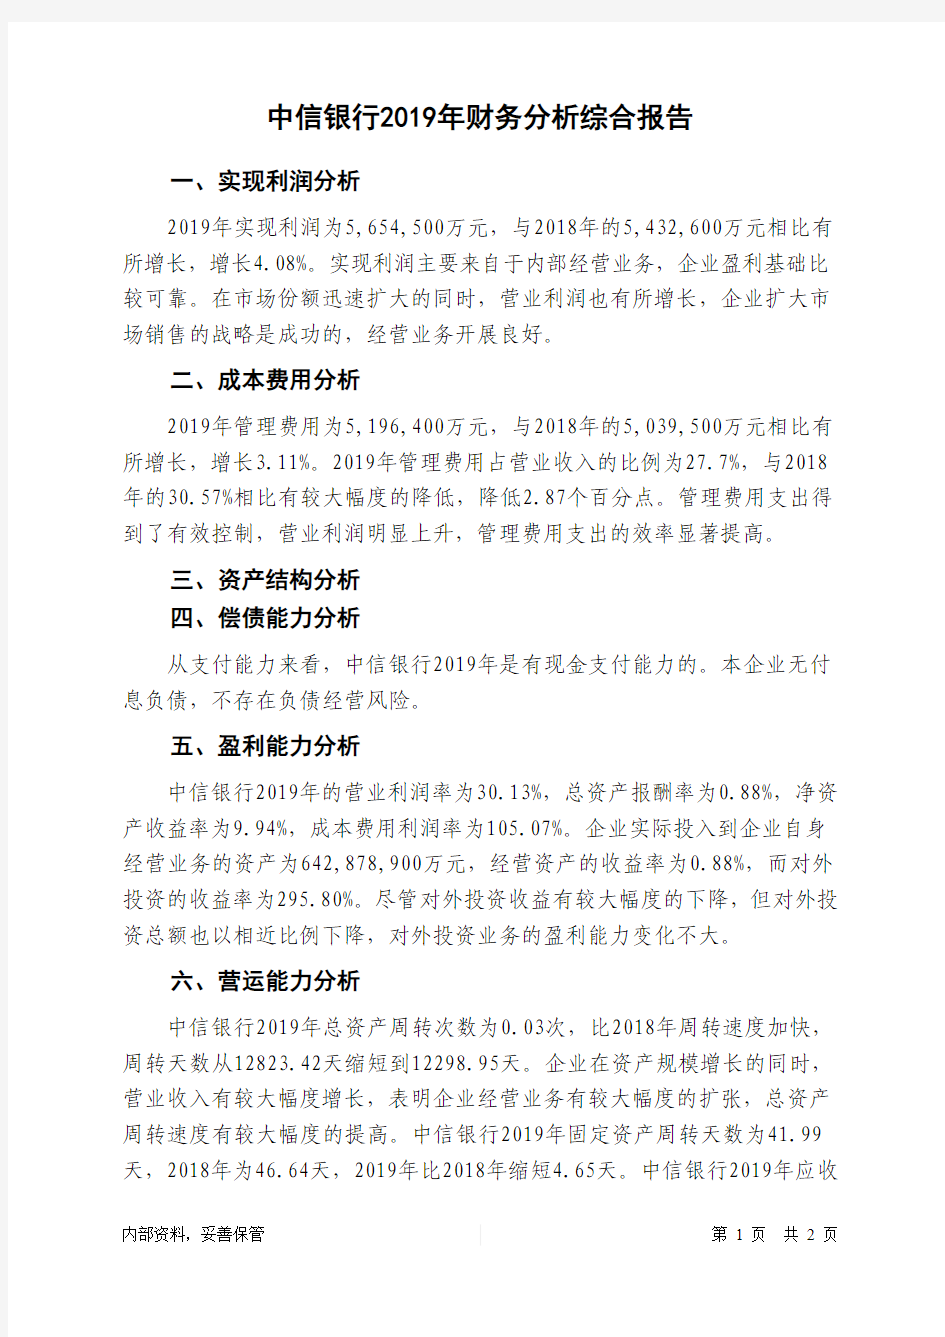 中信银行2019年财务分析结论报告-智泽华